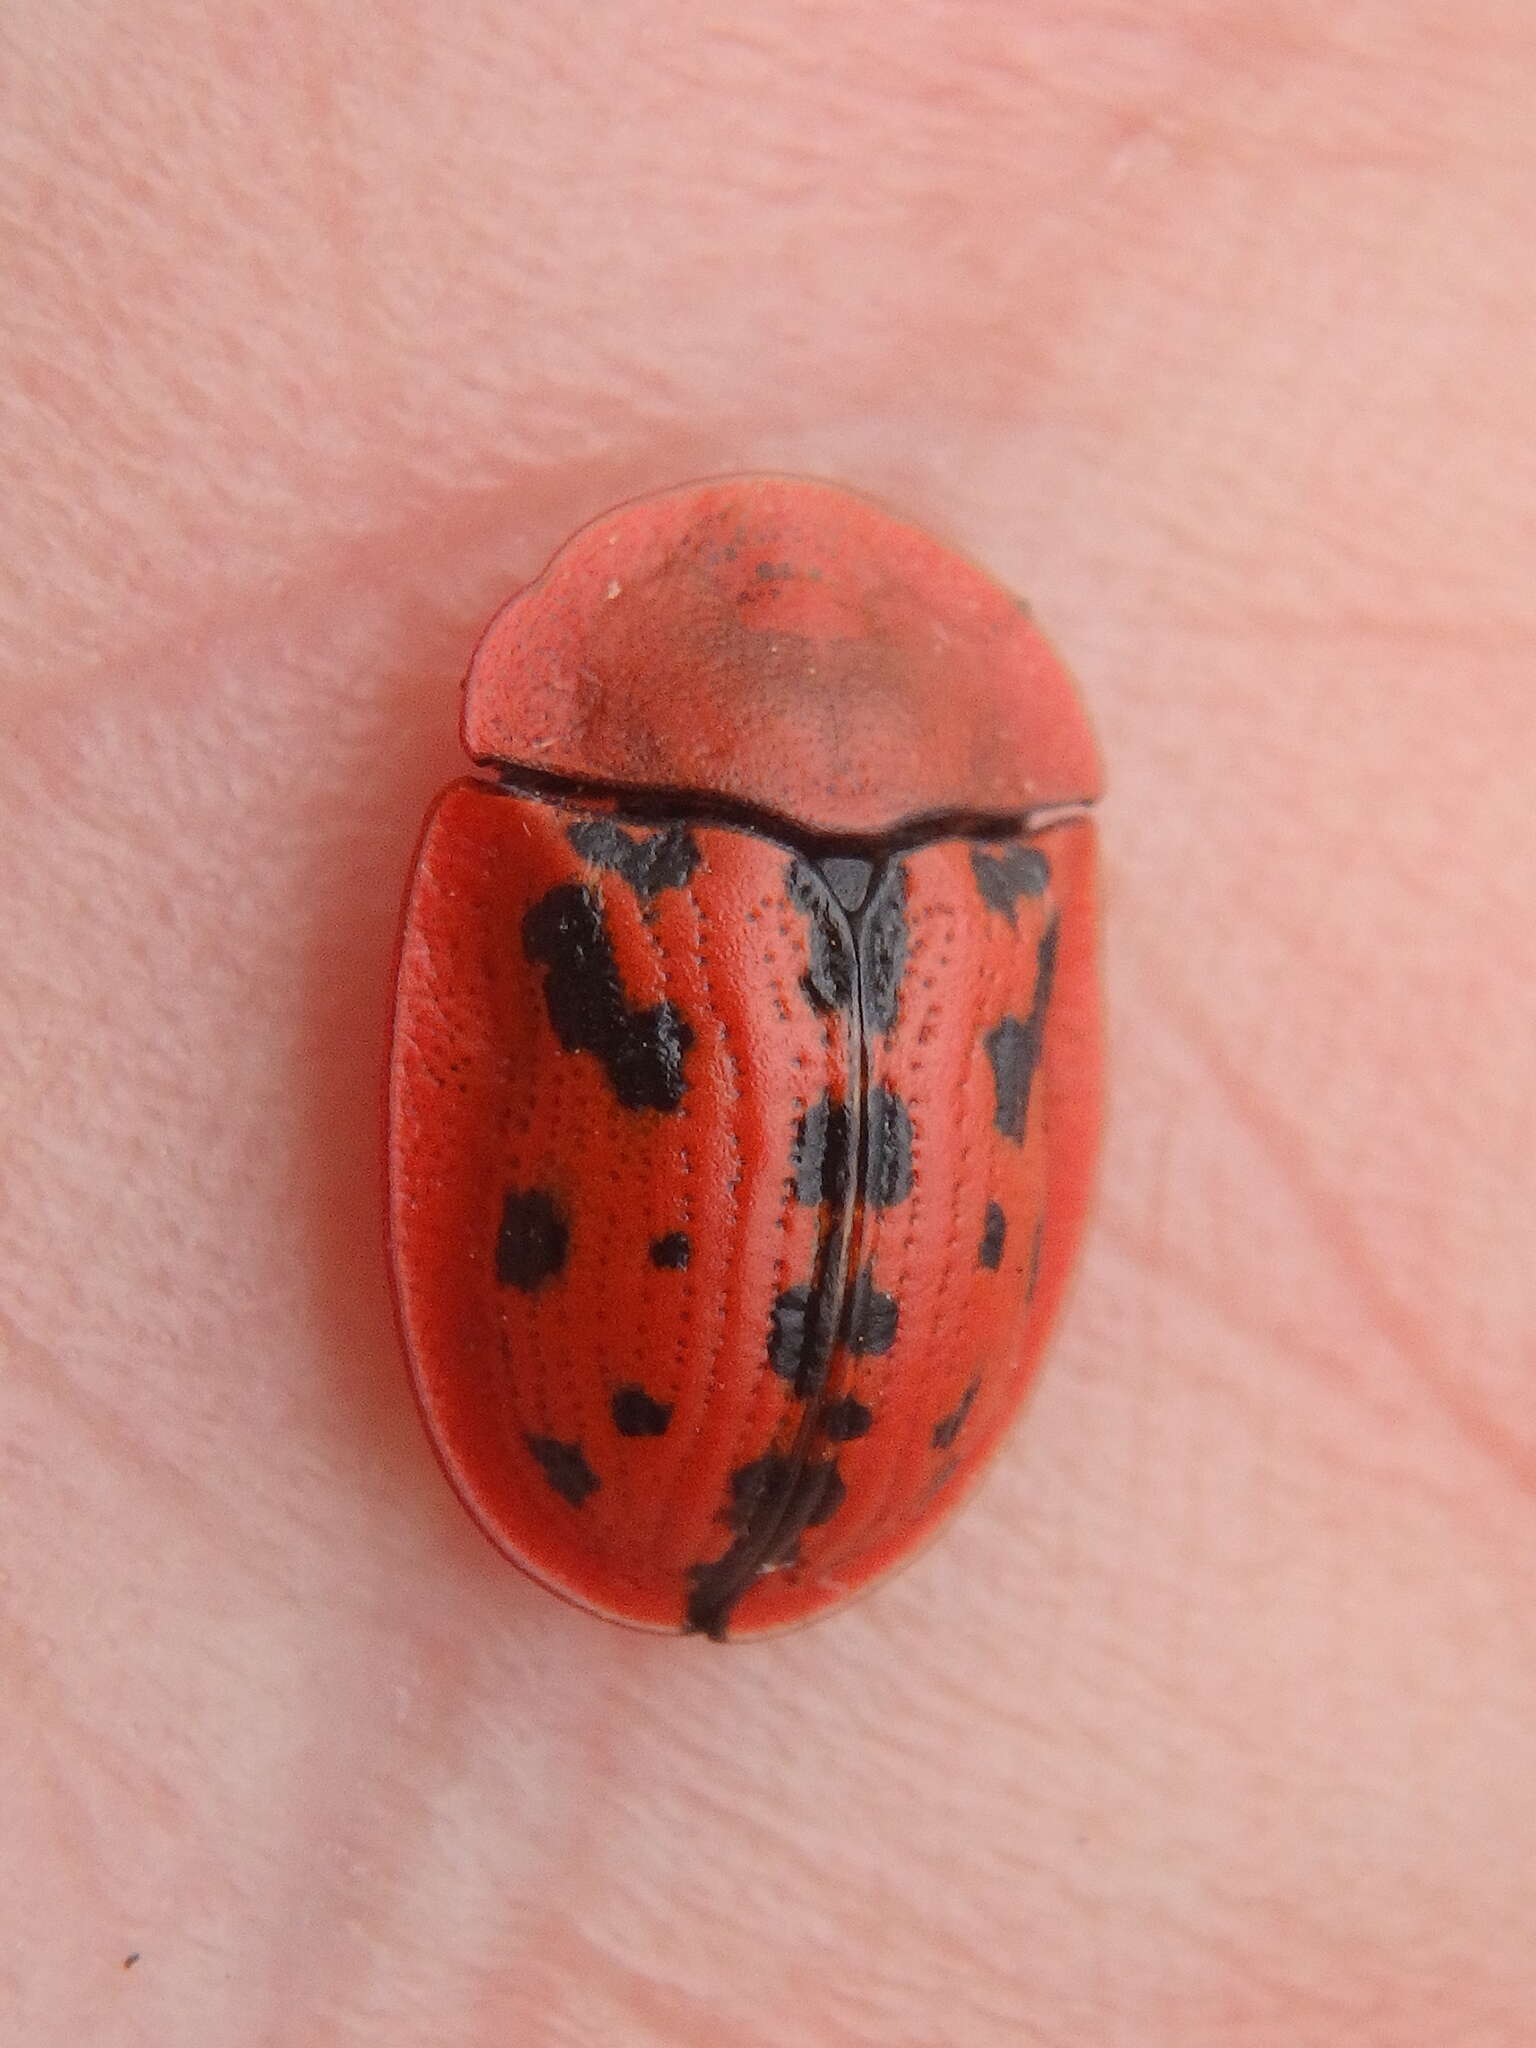 Image of Fleabane tortoise beetle